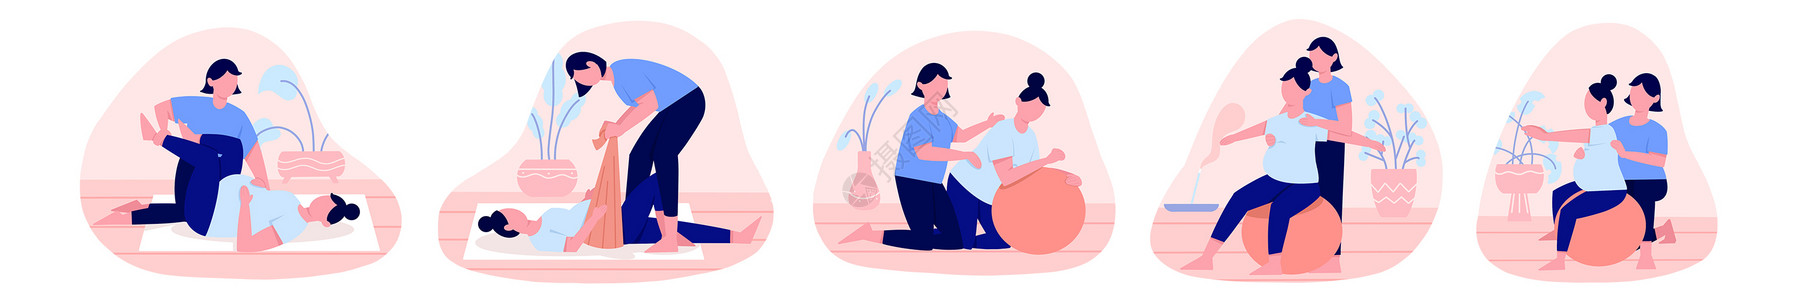 产前焦虑粉蓝色扁平孕妇产前护理训练瑜伽人物主题场景元素插画